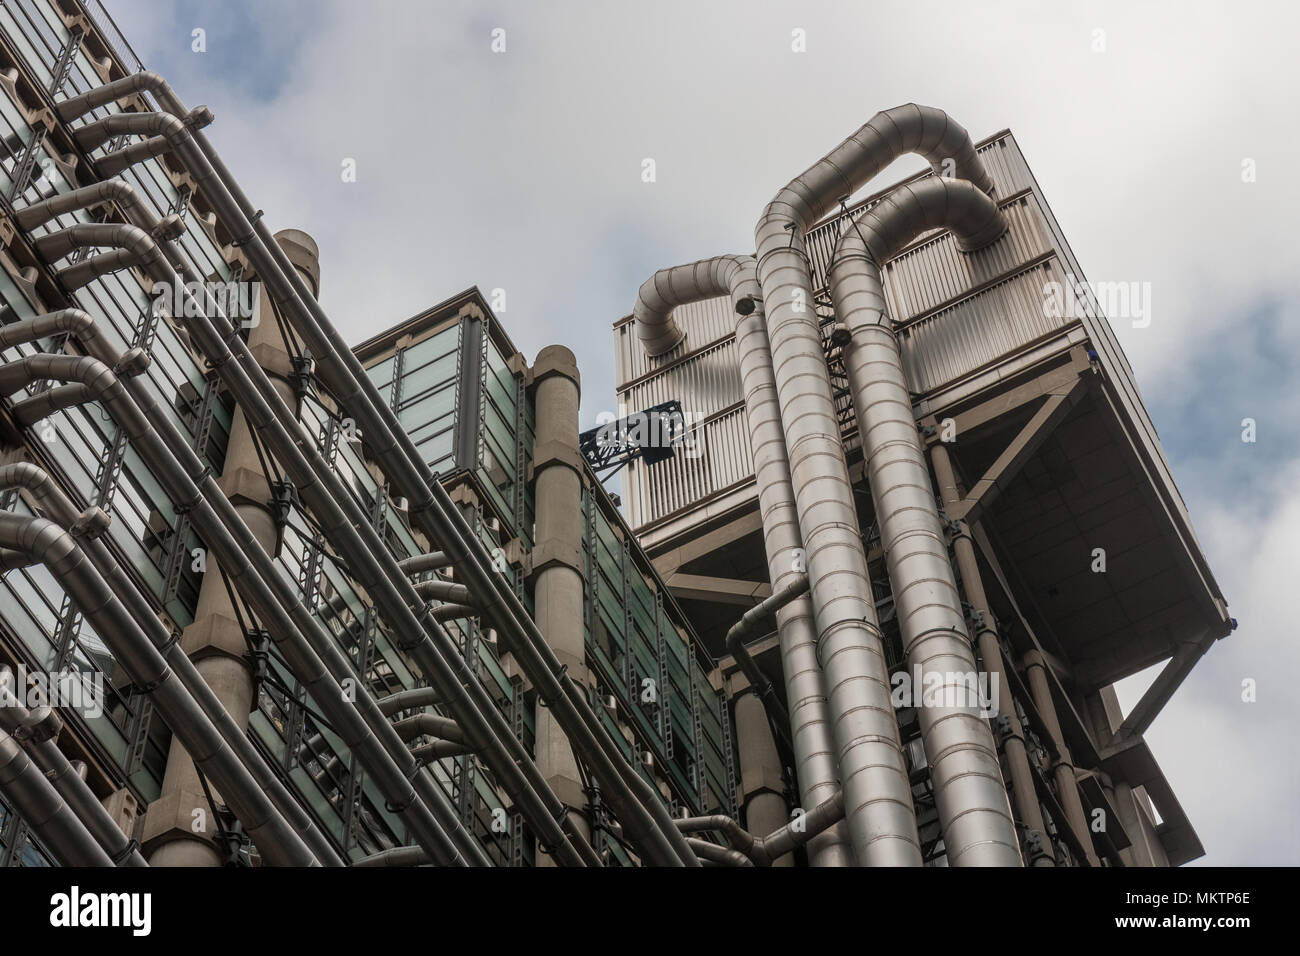 Ville de LONDON, LONDON-Septembre 7,2017 : Le bâtiment de la Lloyds à high-tech style architectural le 7 septembre 2017 à Londres. Banque D'Images